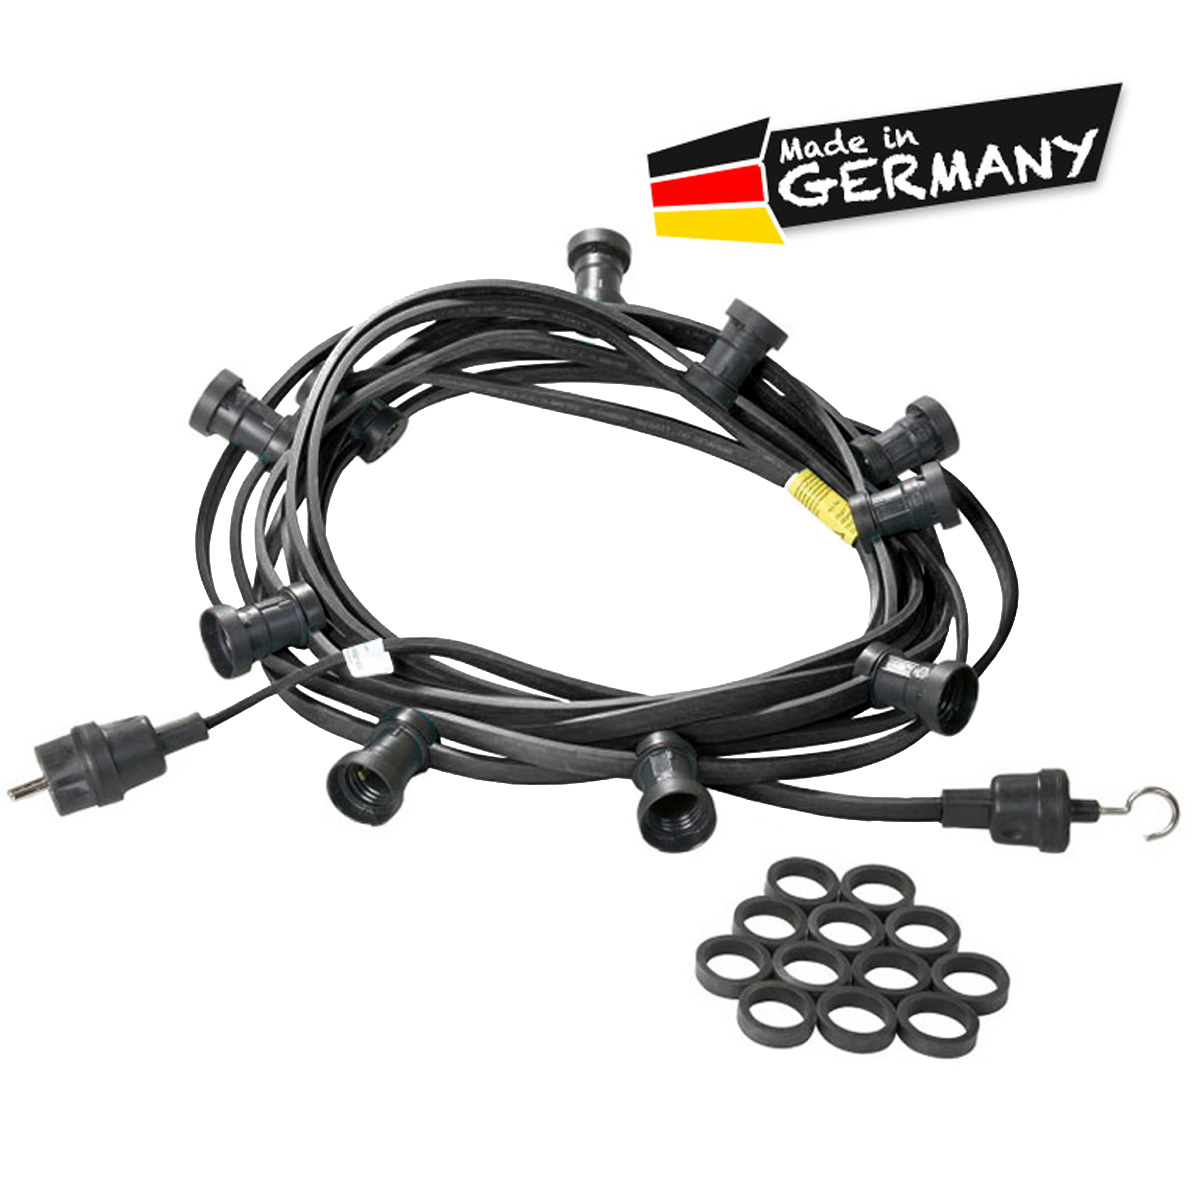 Illu-/Partylichterkette schwarz 5m | Außenlichterkette | Made in Germany | 5 x E27 Schraubfassung